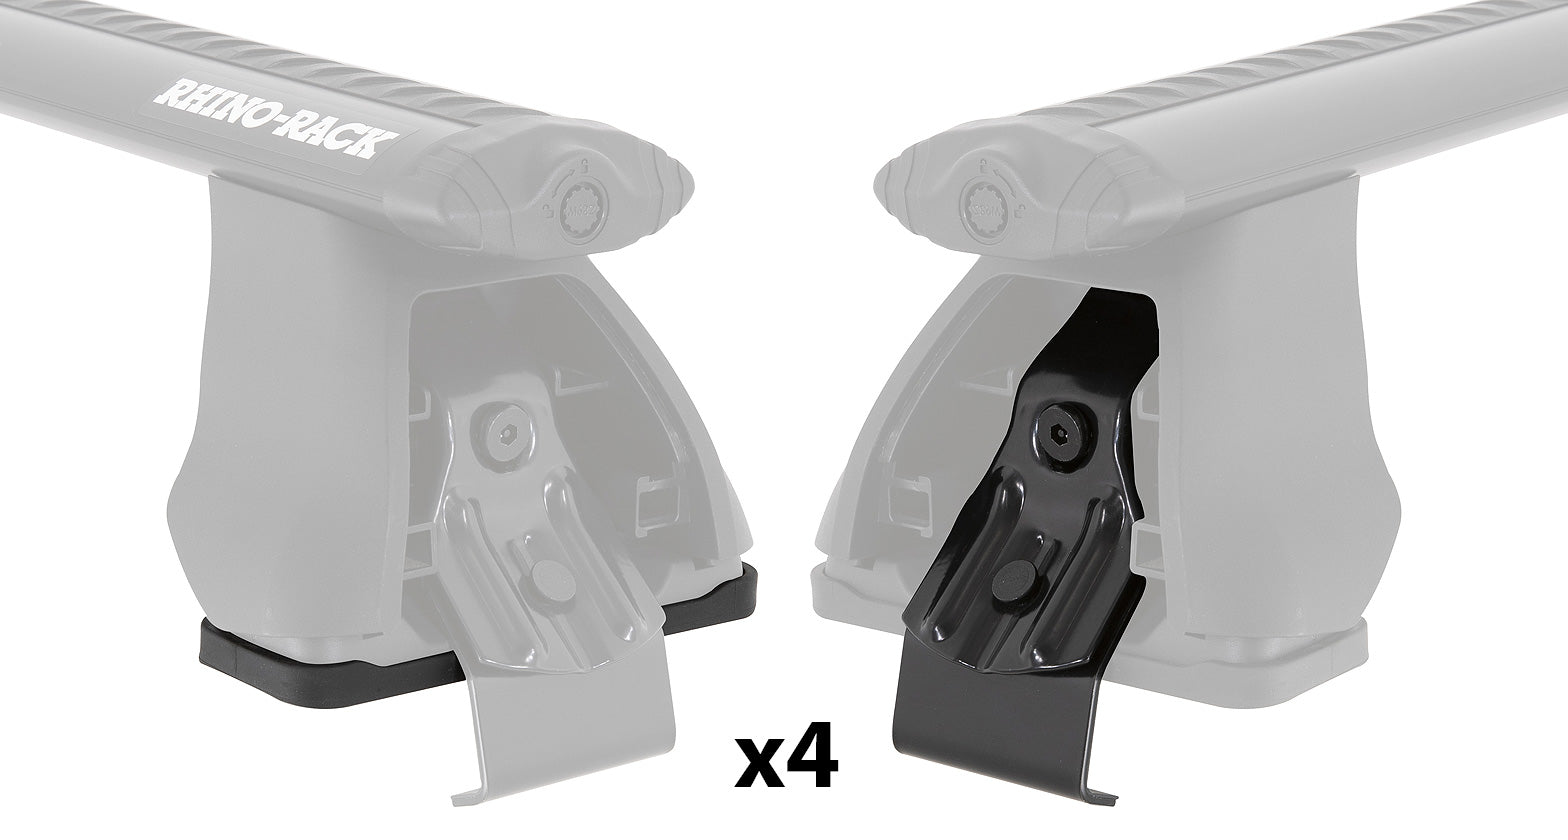 PAD & CLAMP KIT FOR RHINO 2500 MULTI FIT - DK126